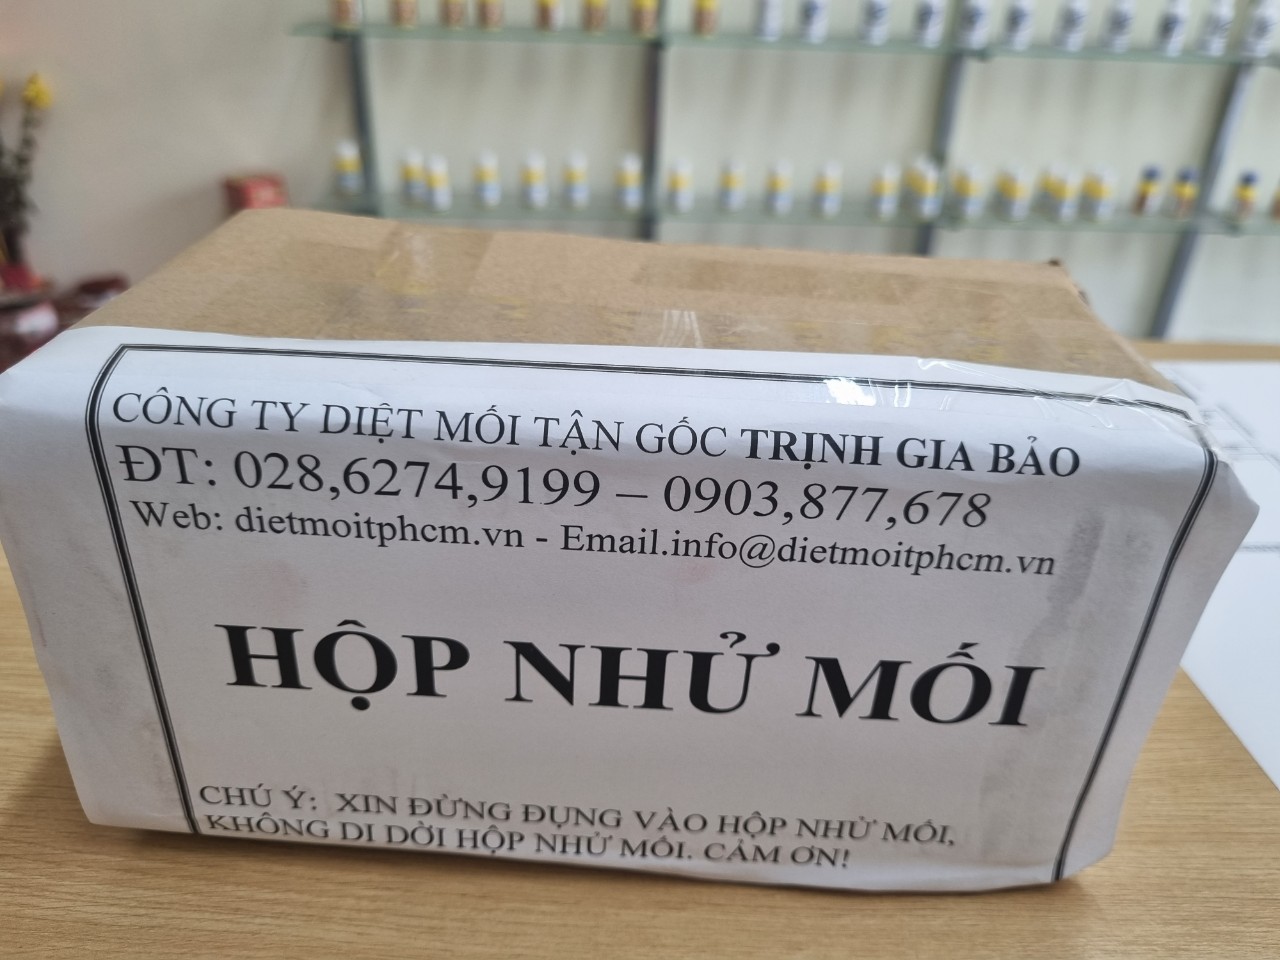 Diệt Mối Tận Gốc Tại Kiên Giang Trịnh Gia Bảo